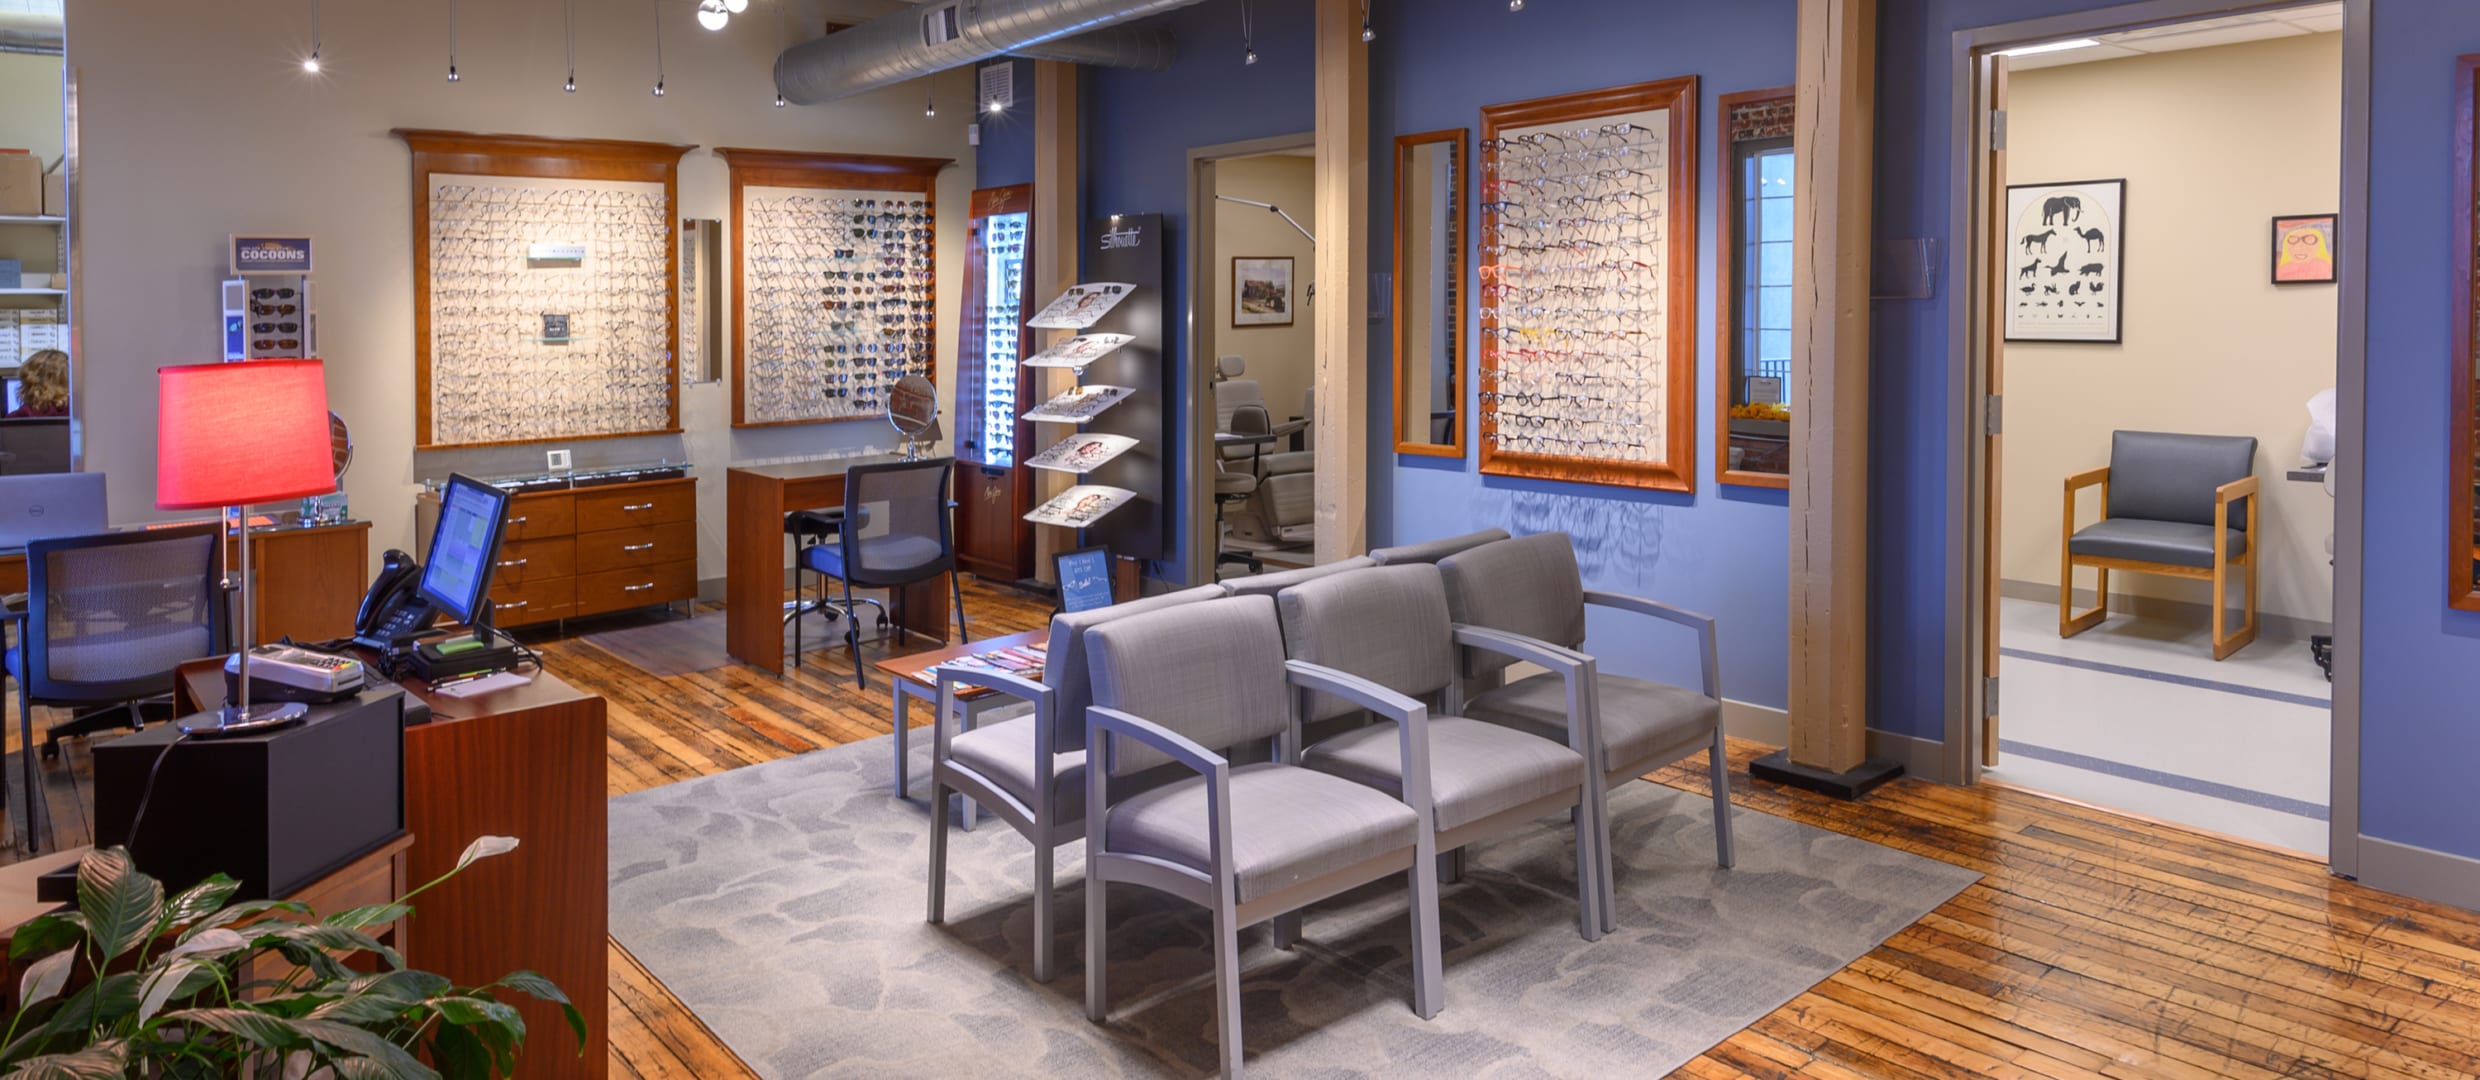 Optometrist Waiting Room